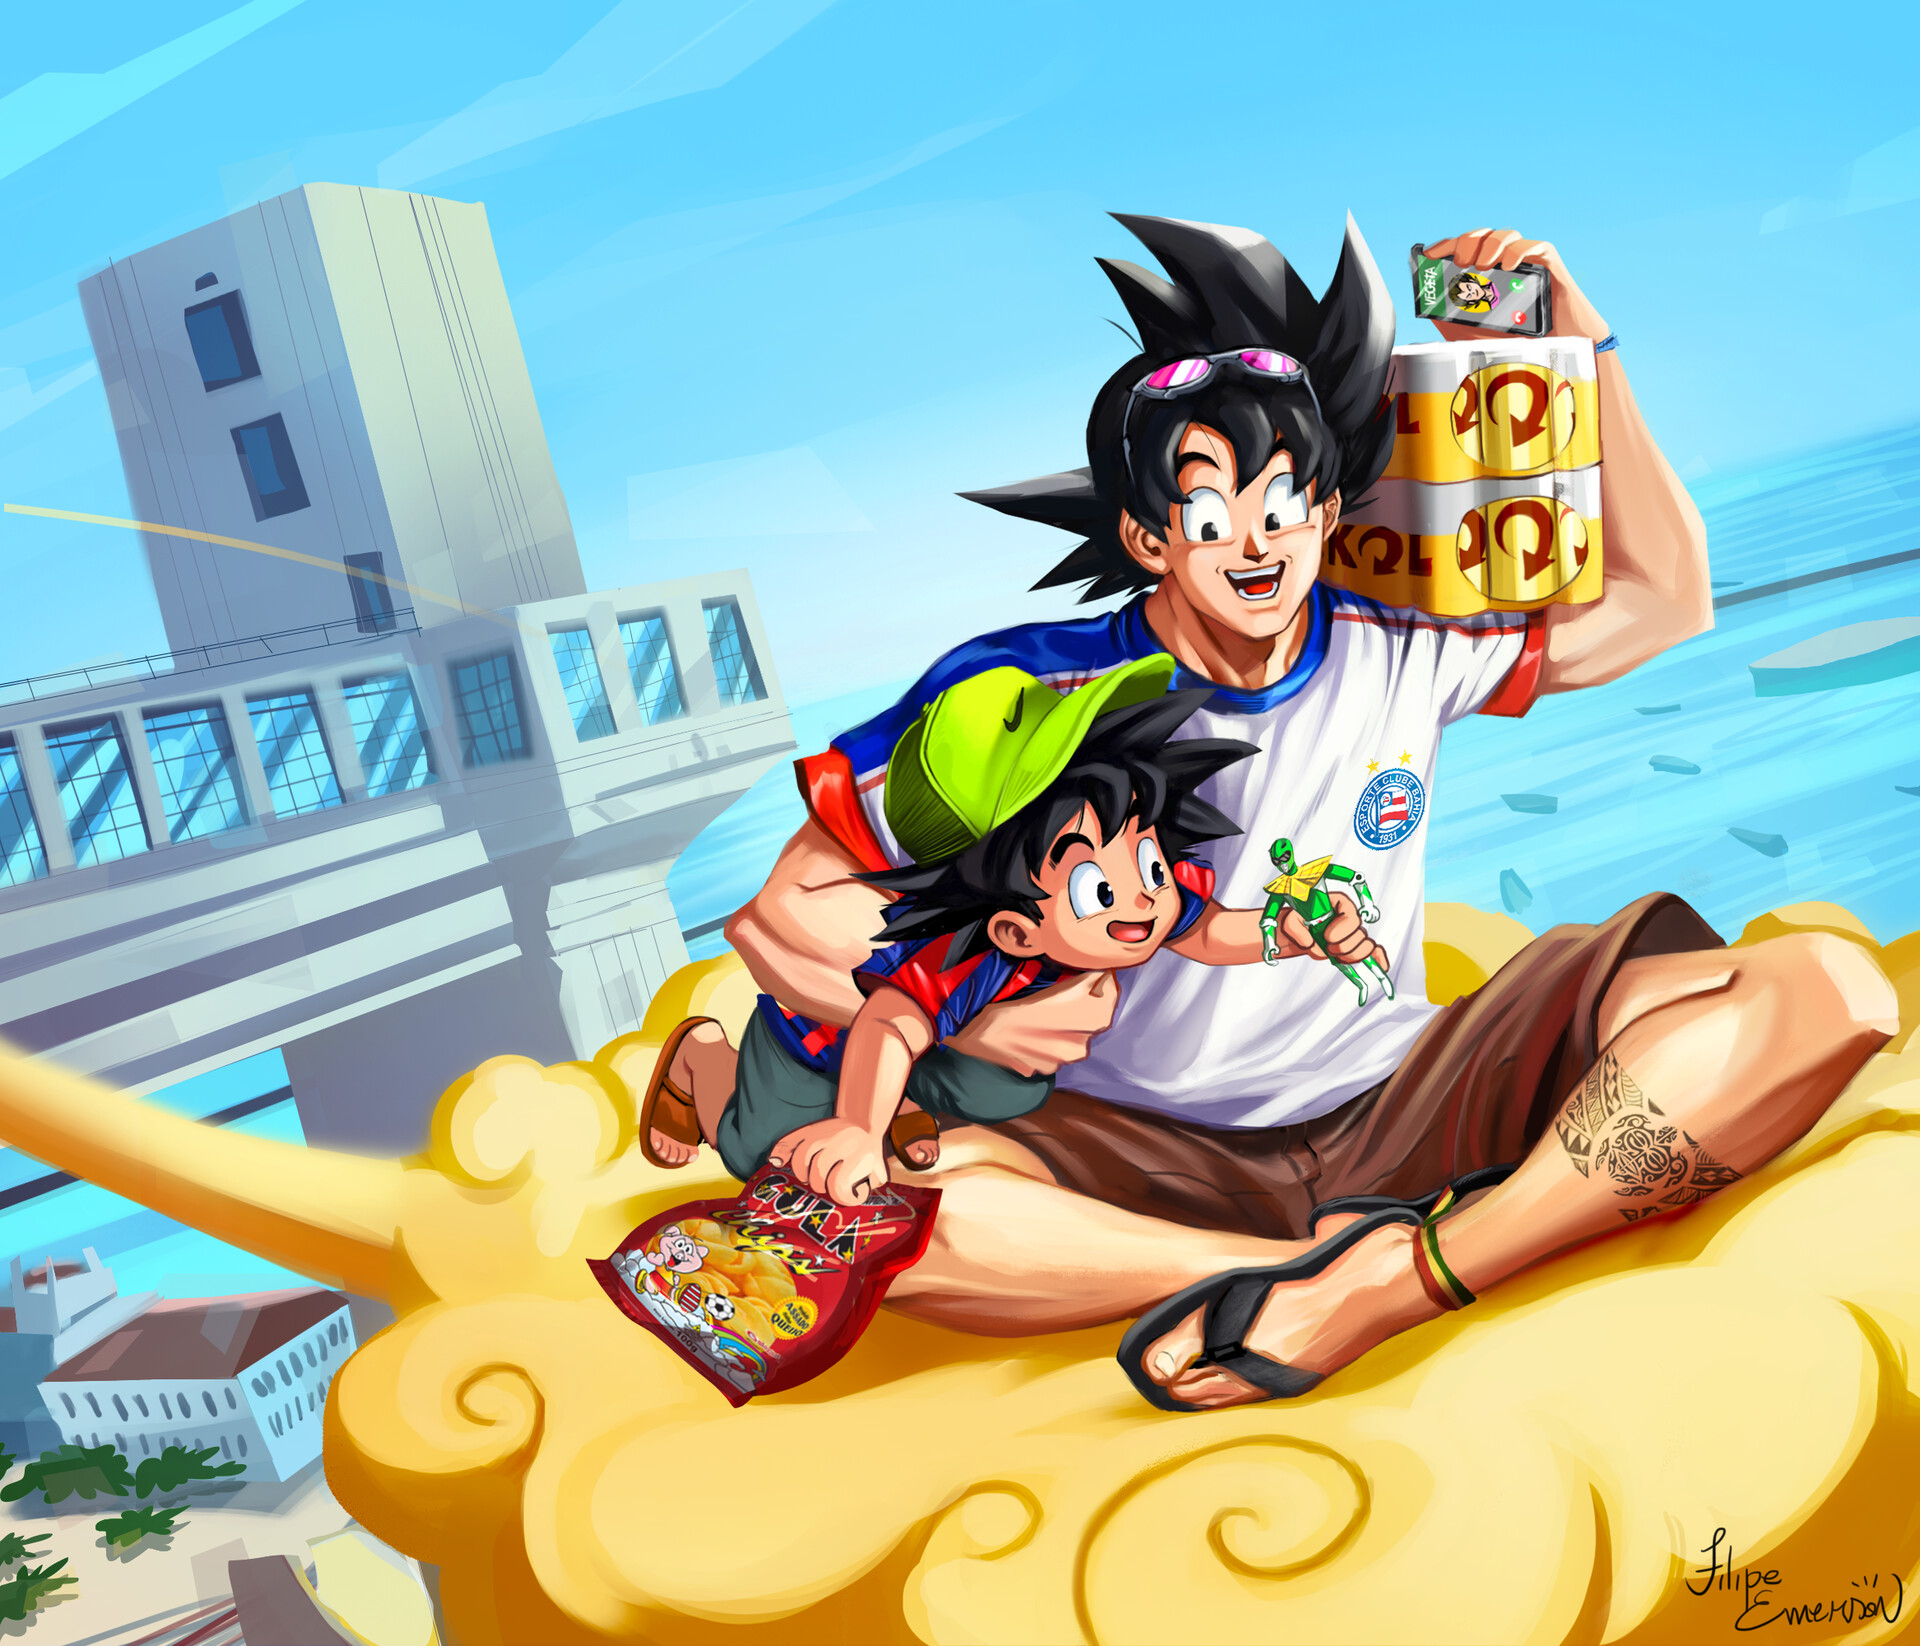 Ilustrador brasileiro imaginou como seria se Goku e Vegeta fossem baianos